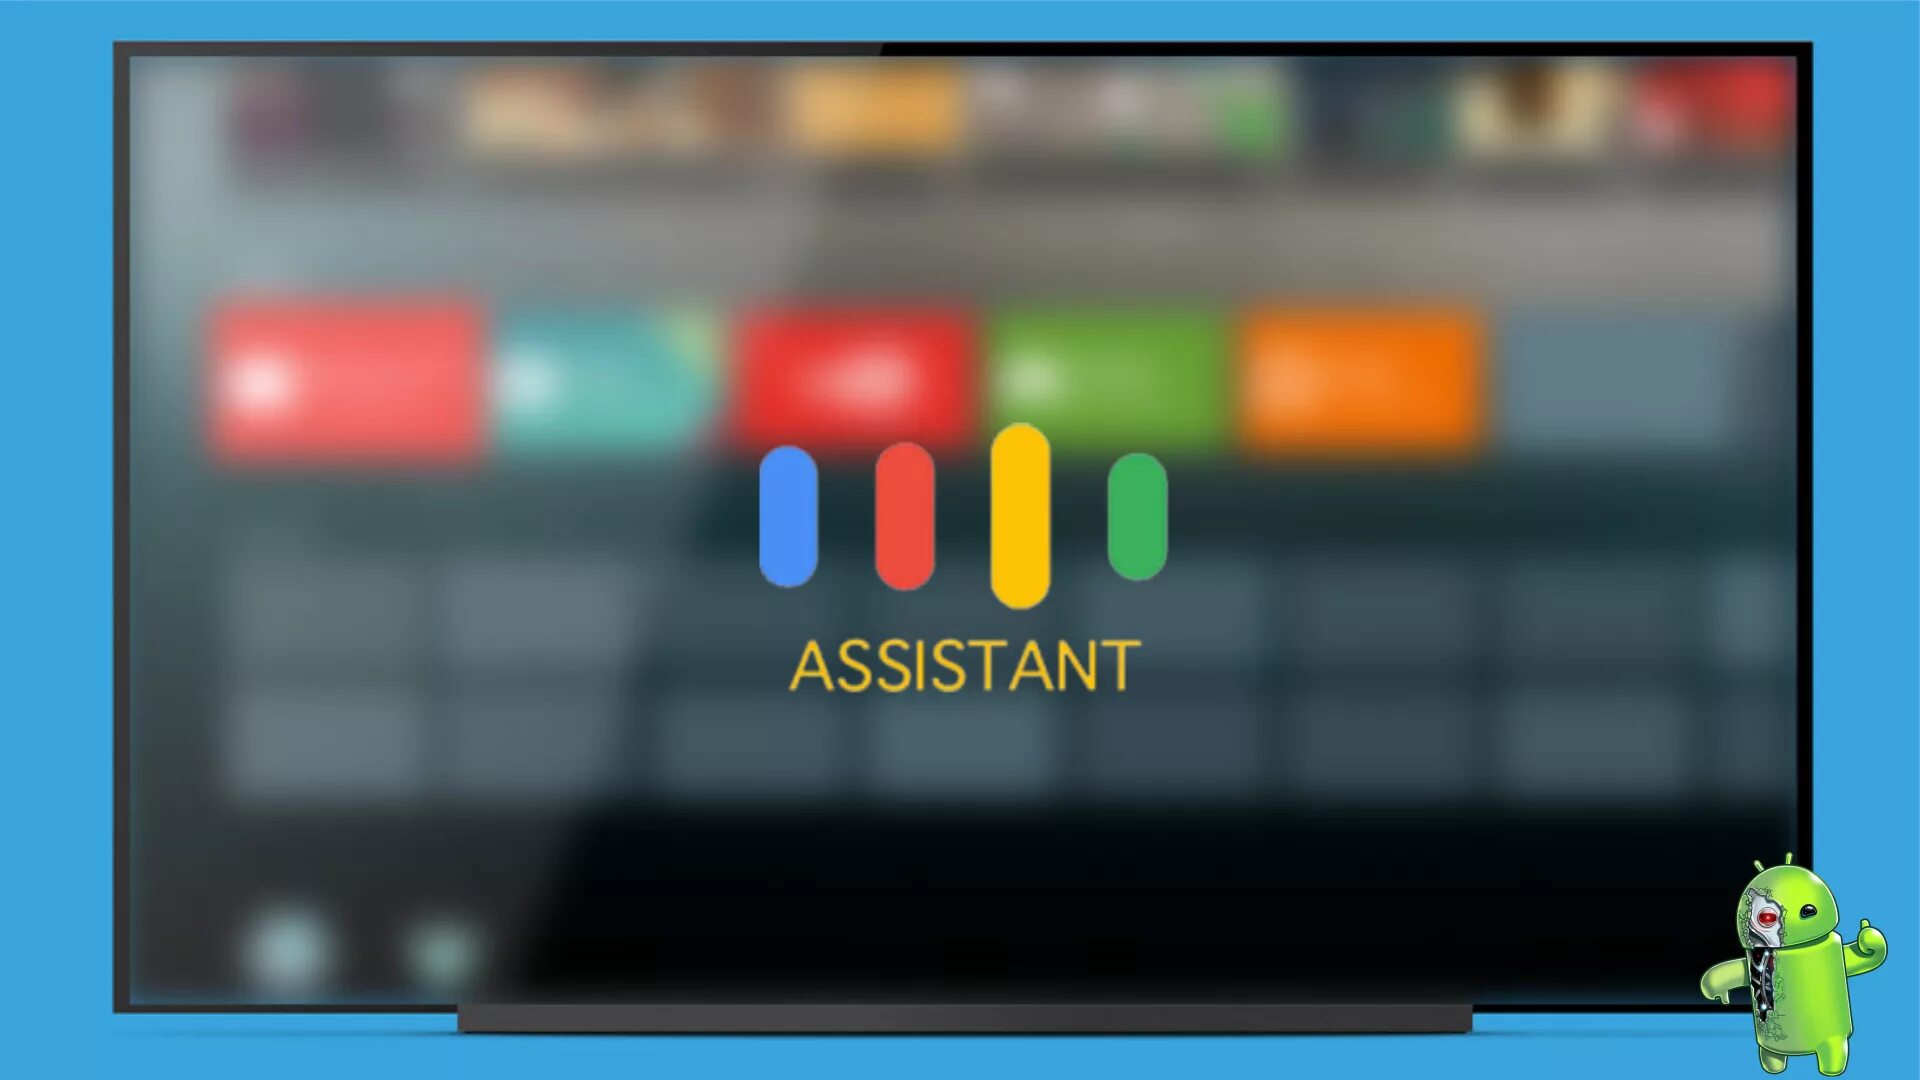 Голосовой помощник на тв. Android TV голосовой ассистент. Google TV телевизор. Google Assistant Android TV. TV Assistant для смарт ТВ.